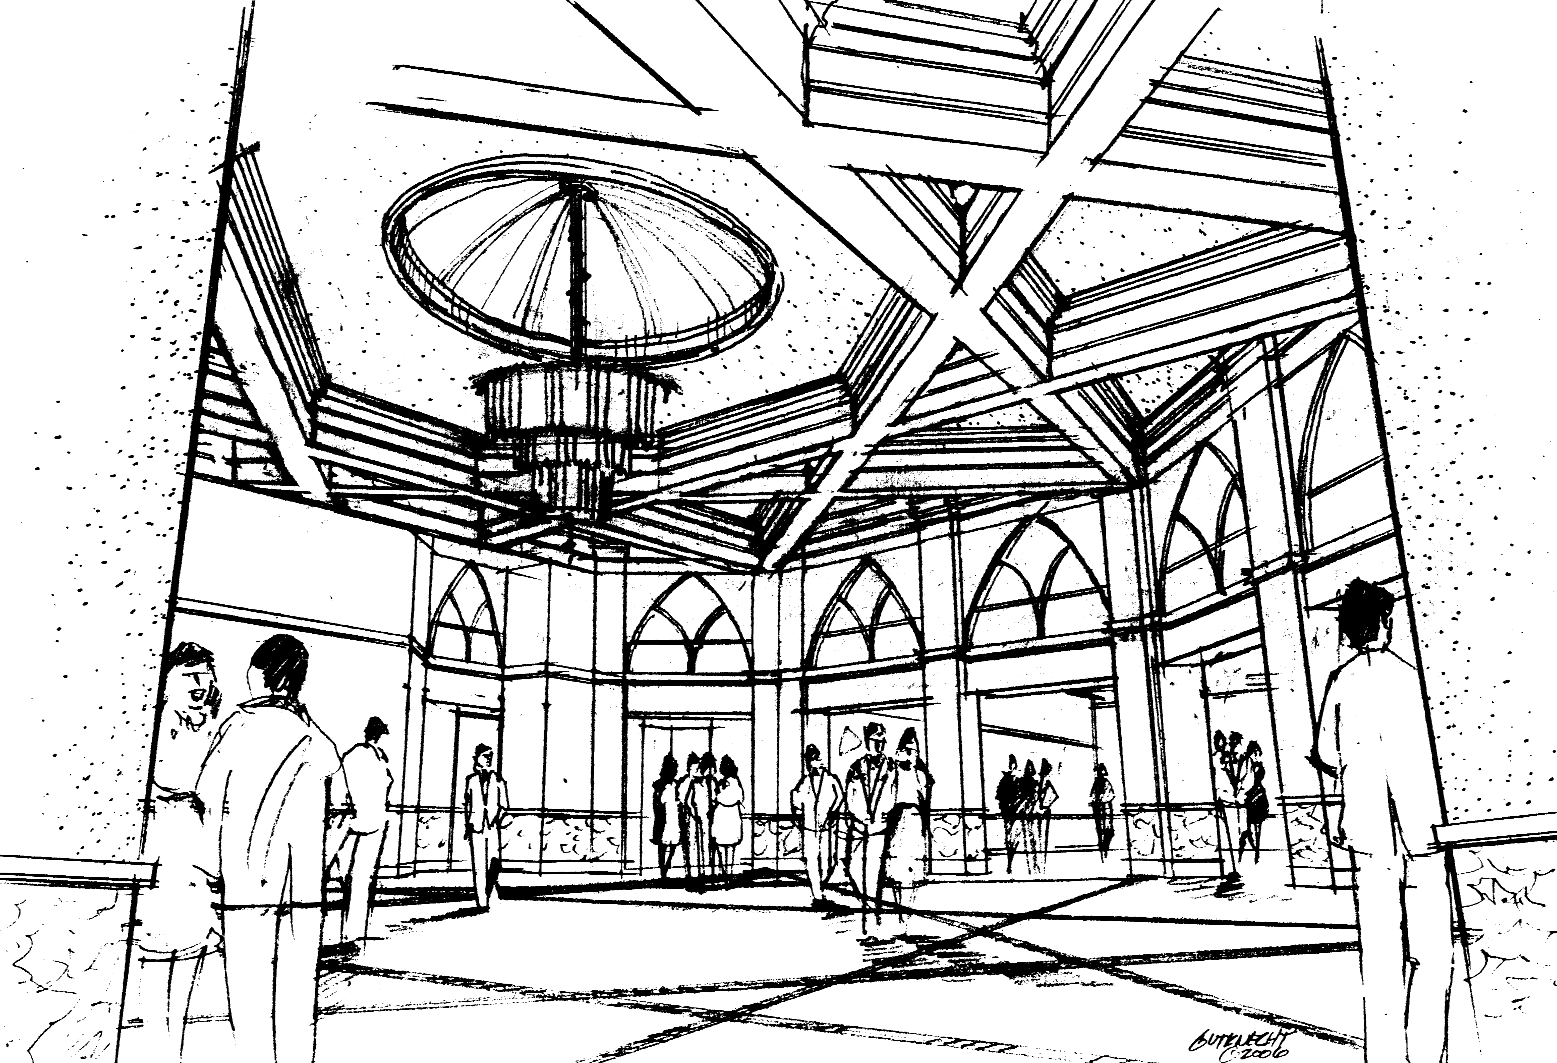 Maronite Heritage Institute Interior Drawing